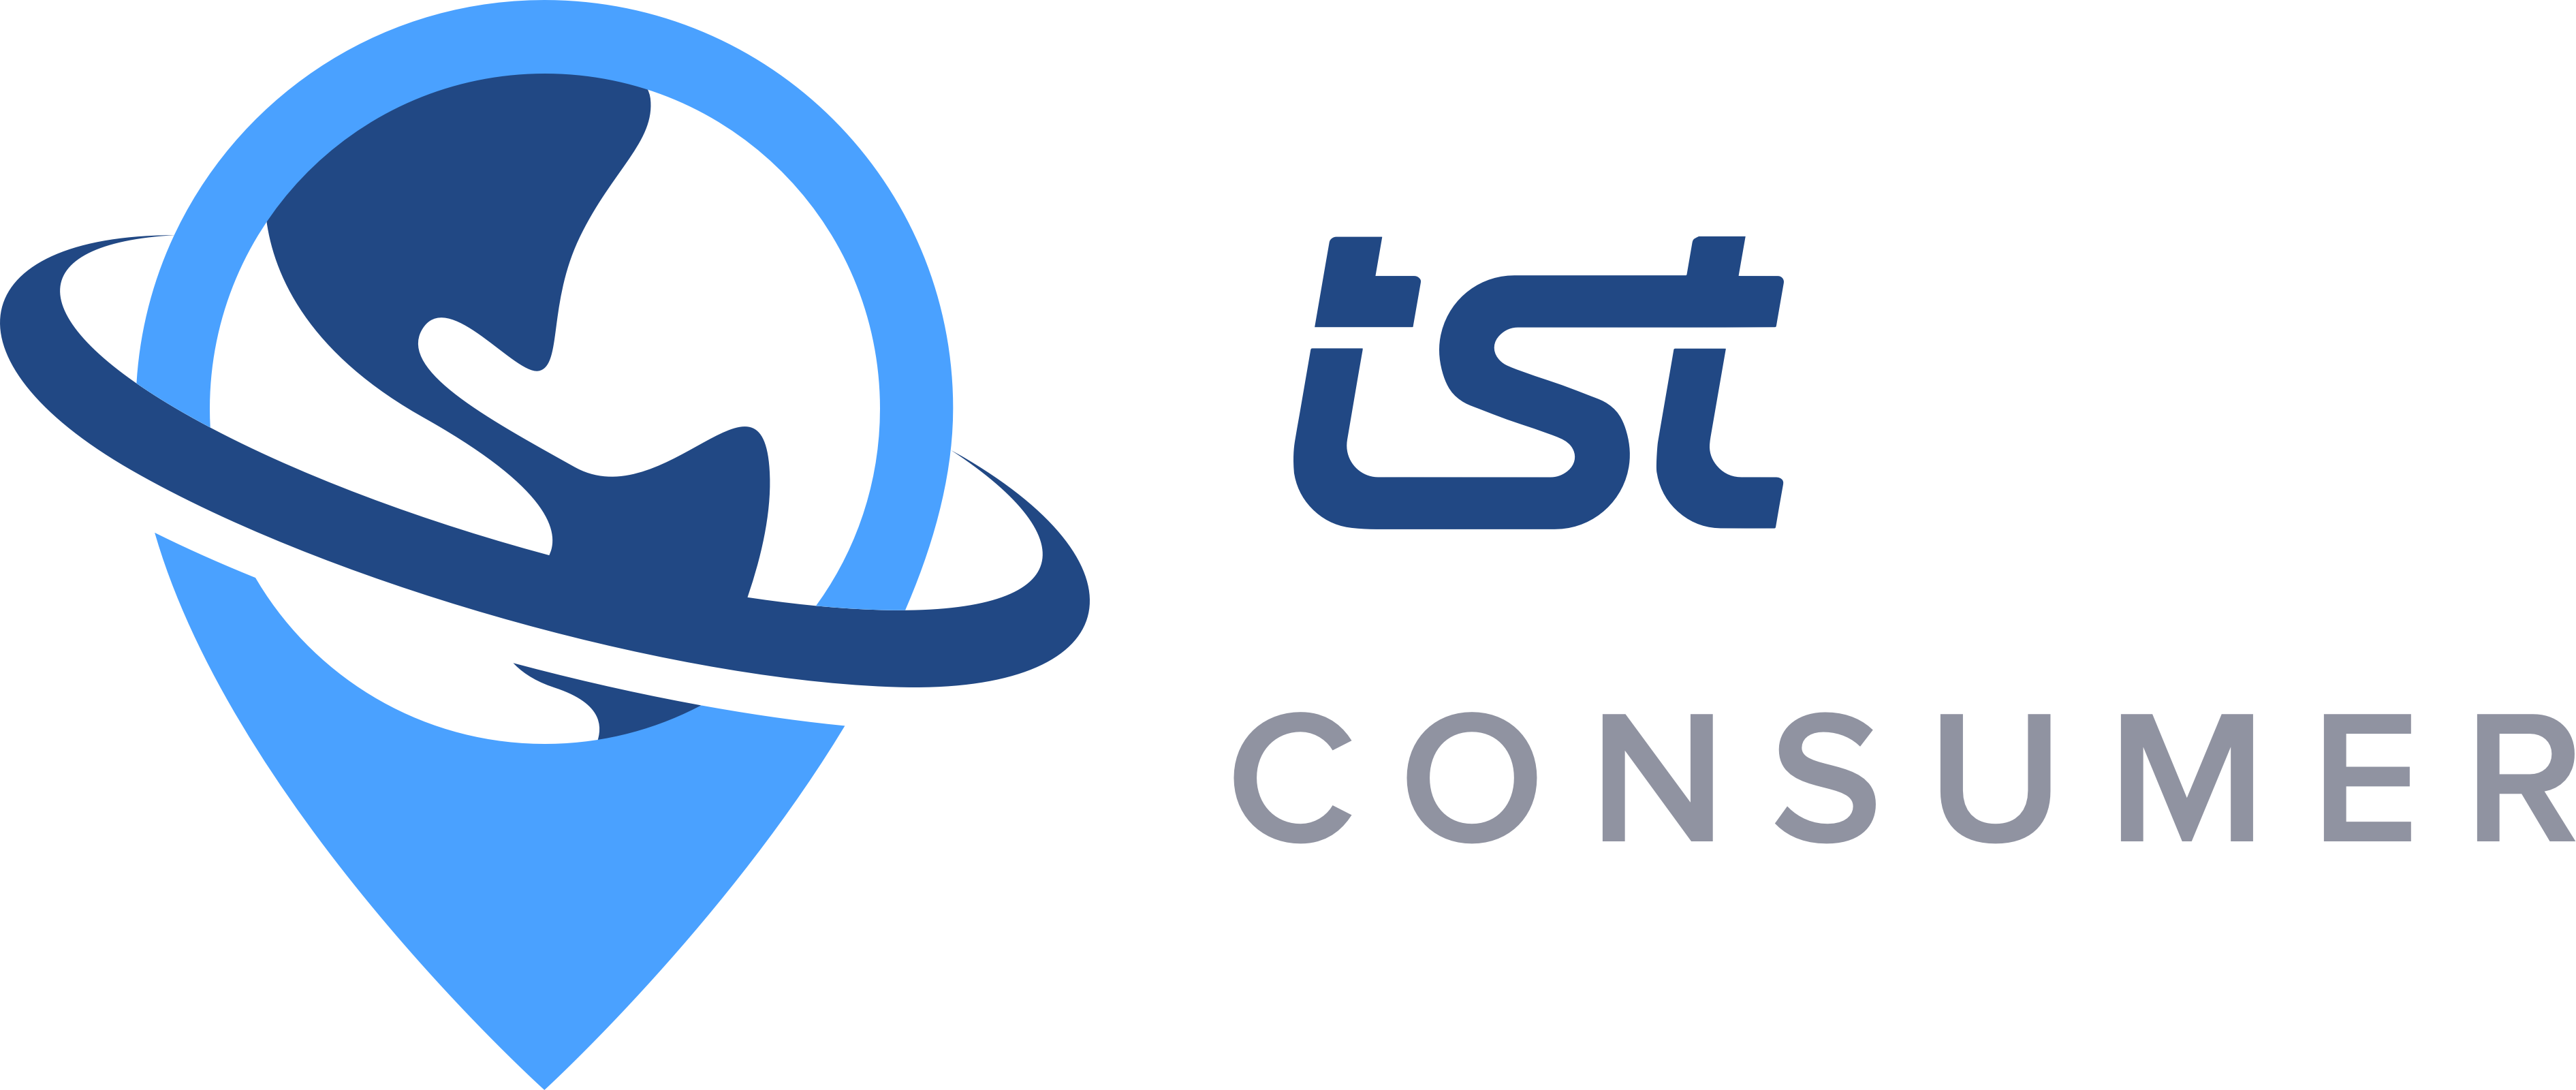 Consumer Png - Tst Consumer - Crescent - Tst Logos Clipart (3782x1600), Png Download